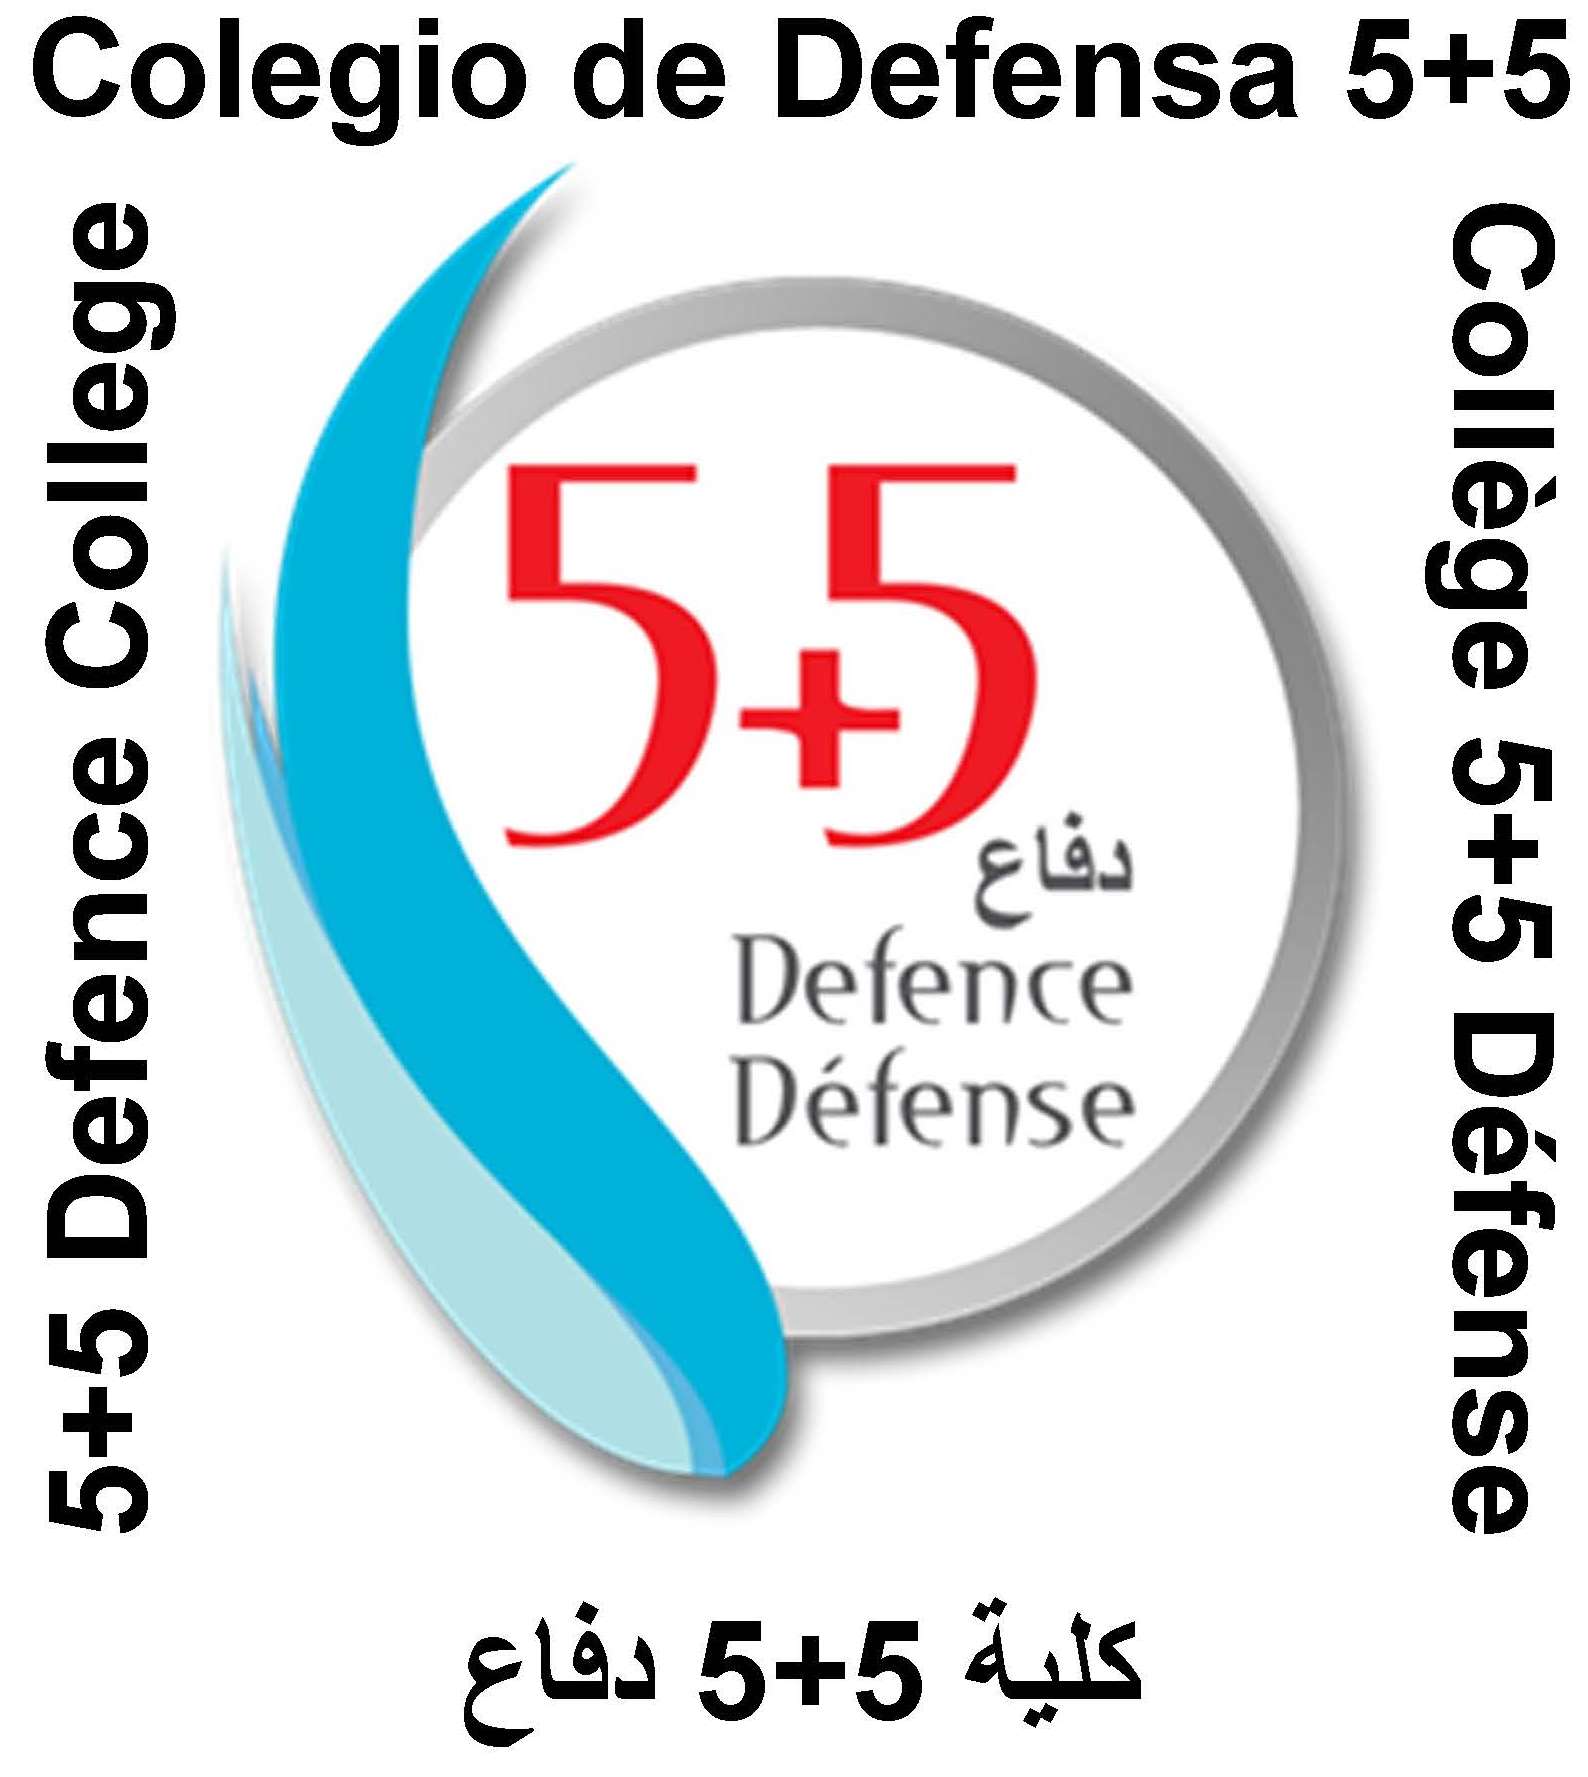 Colegio de Defensa 5+5